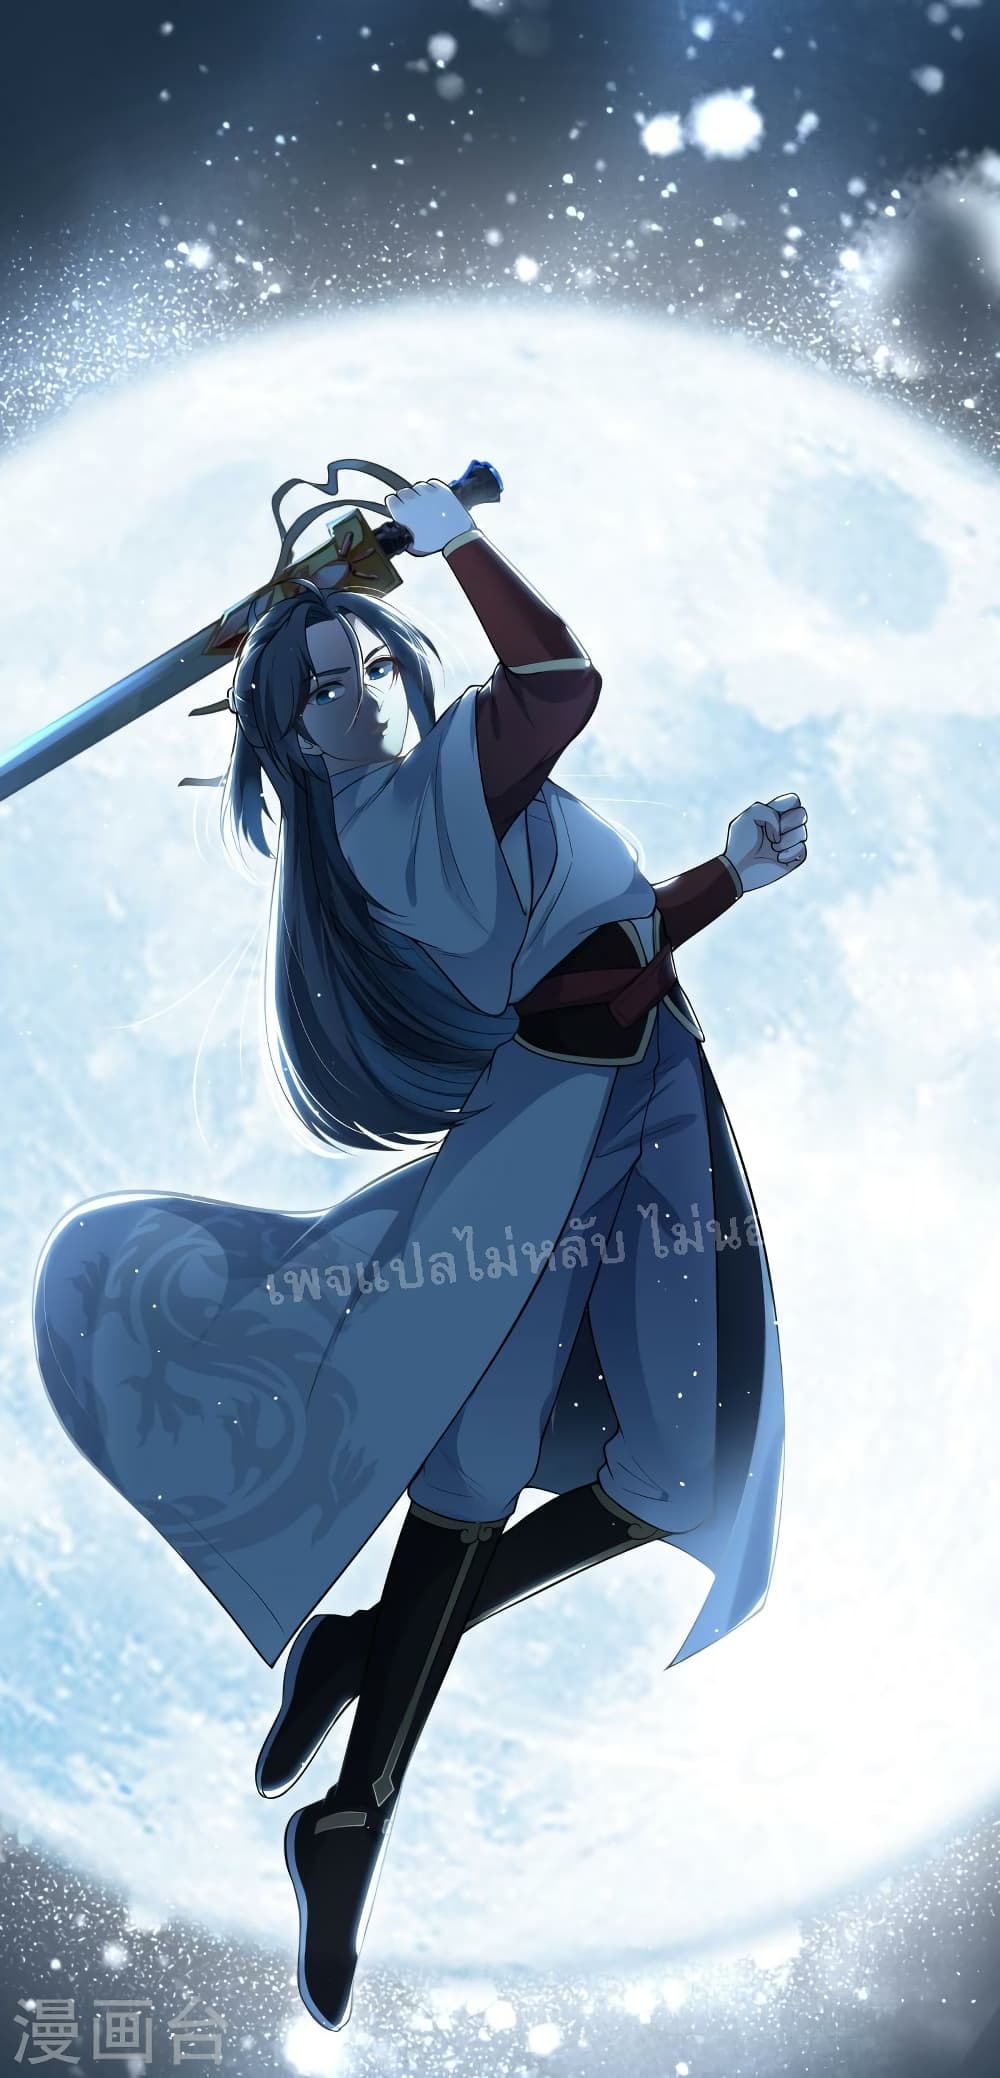 The Sword Immortal Emperor was reborn as a son-in-law 5-5